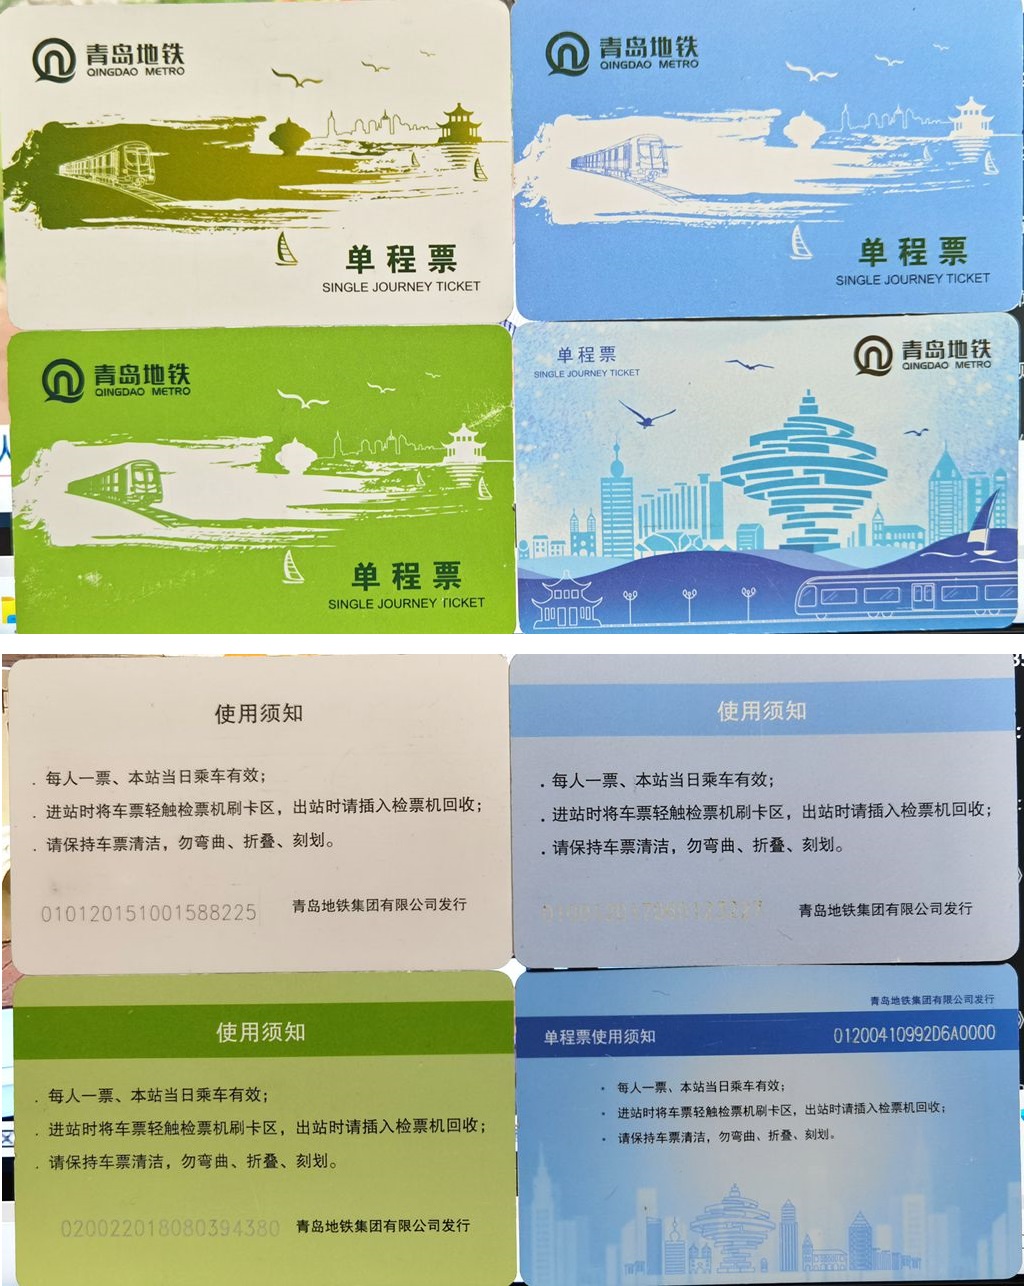 T5271, China Tsingtao City, Metro Card (Subway Ticket), 4 pcs, One Way 2020, Unvalid